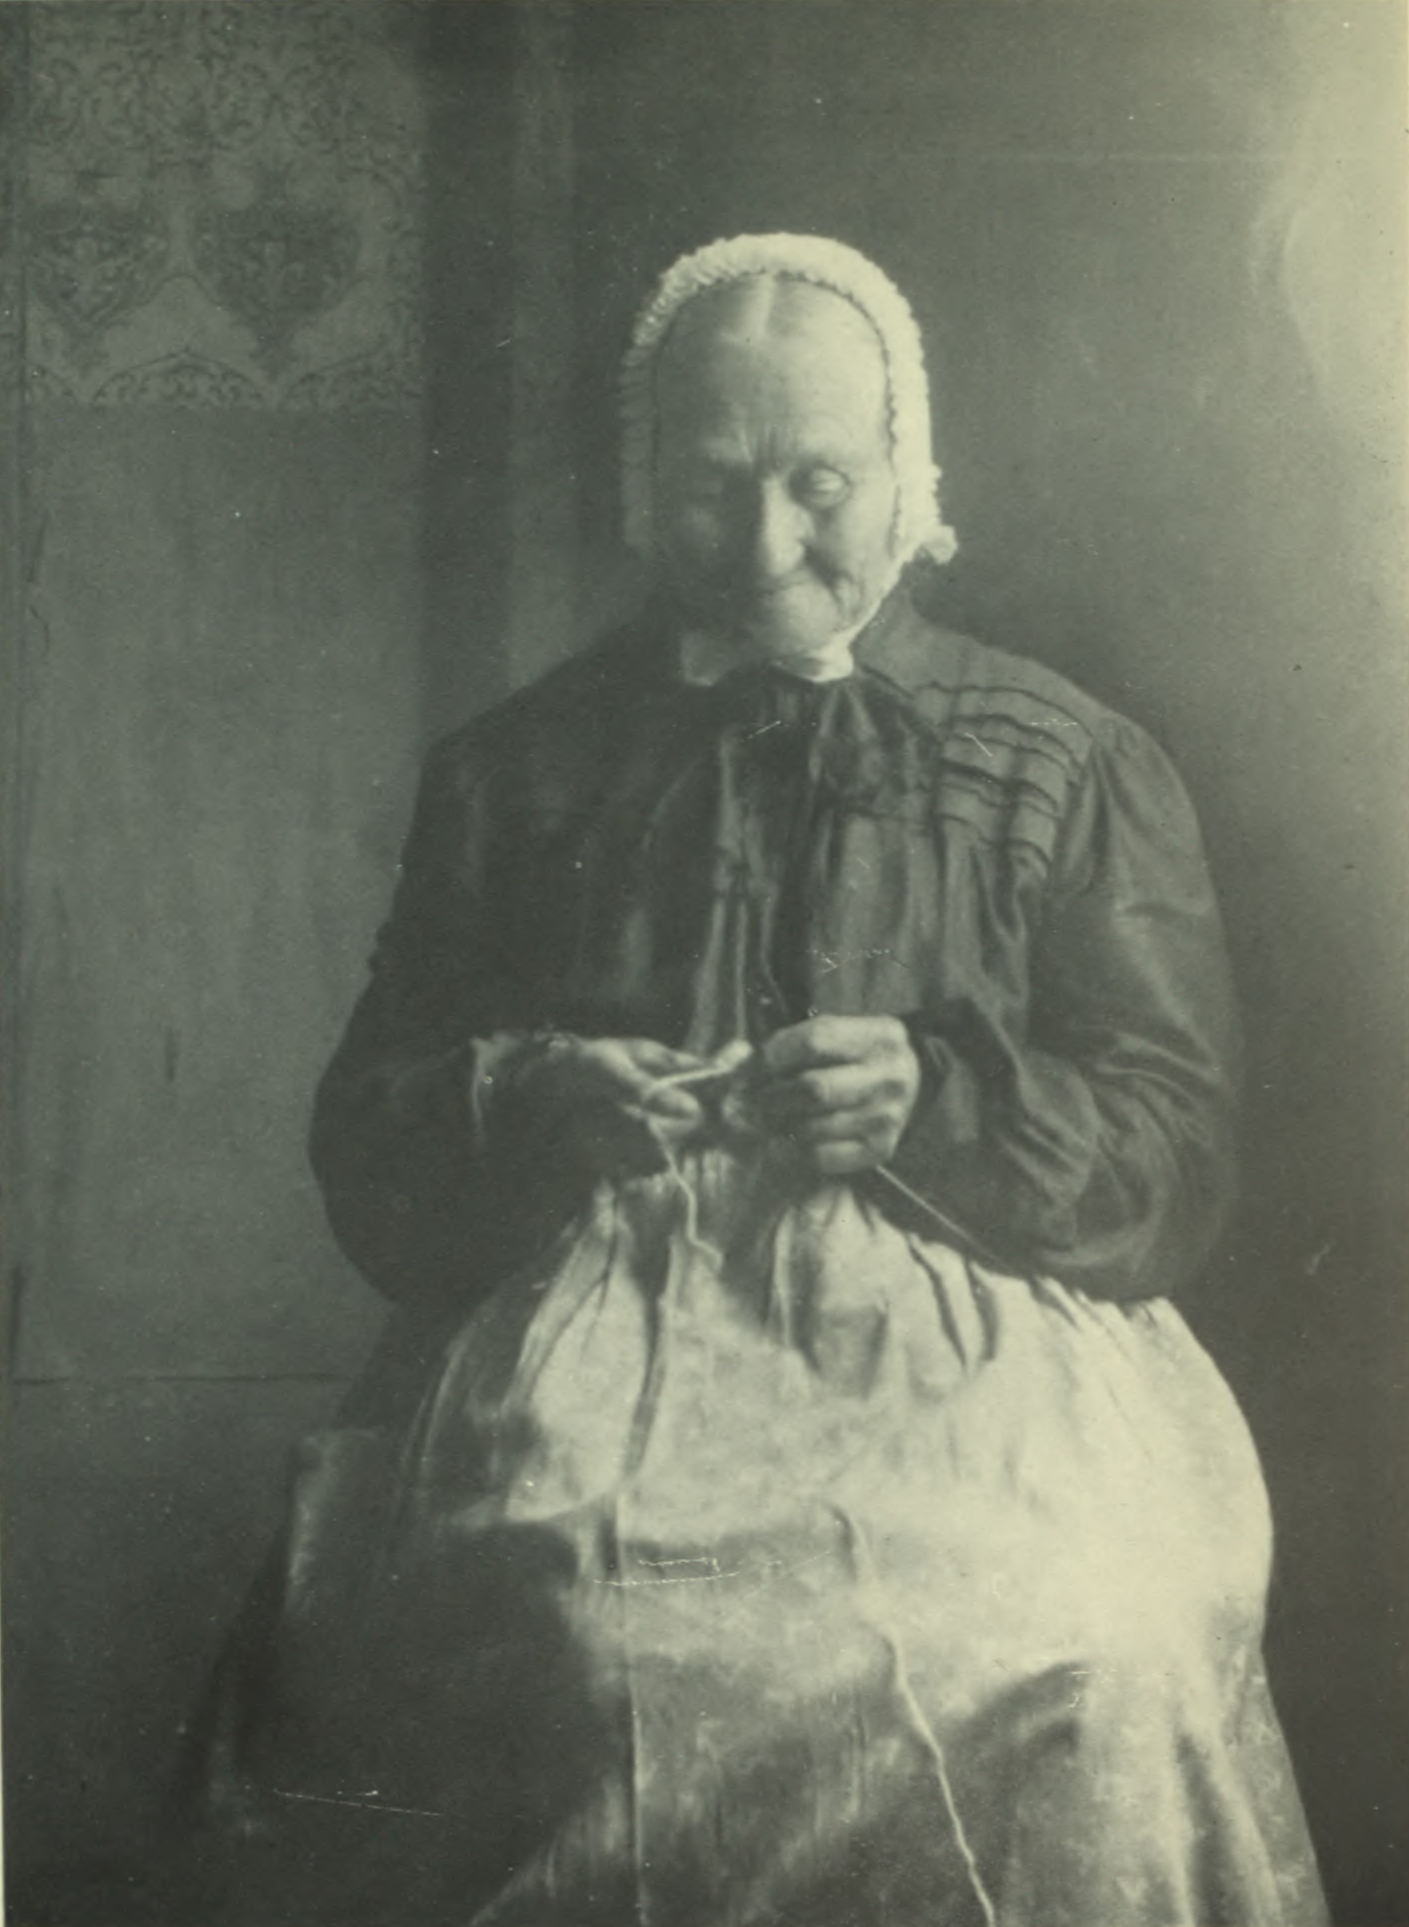 Woman wearing bonnet sewing by the window.